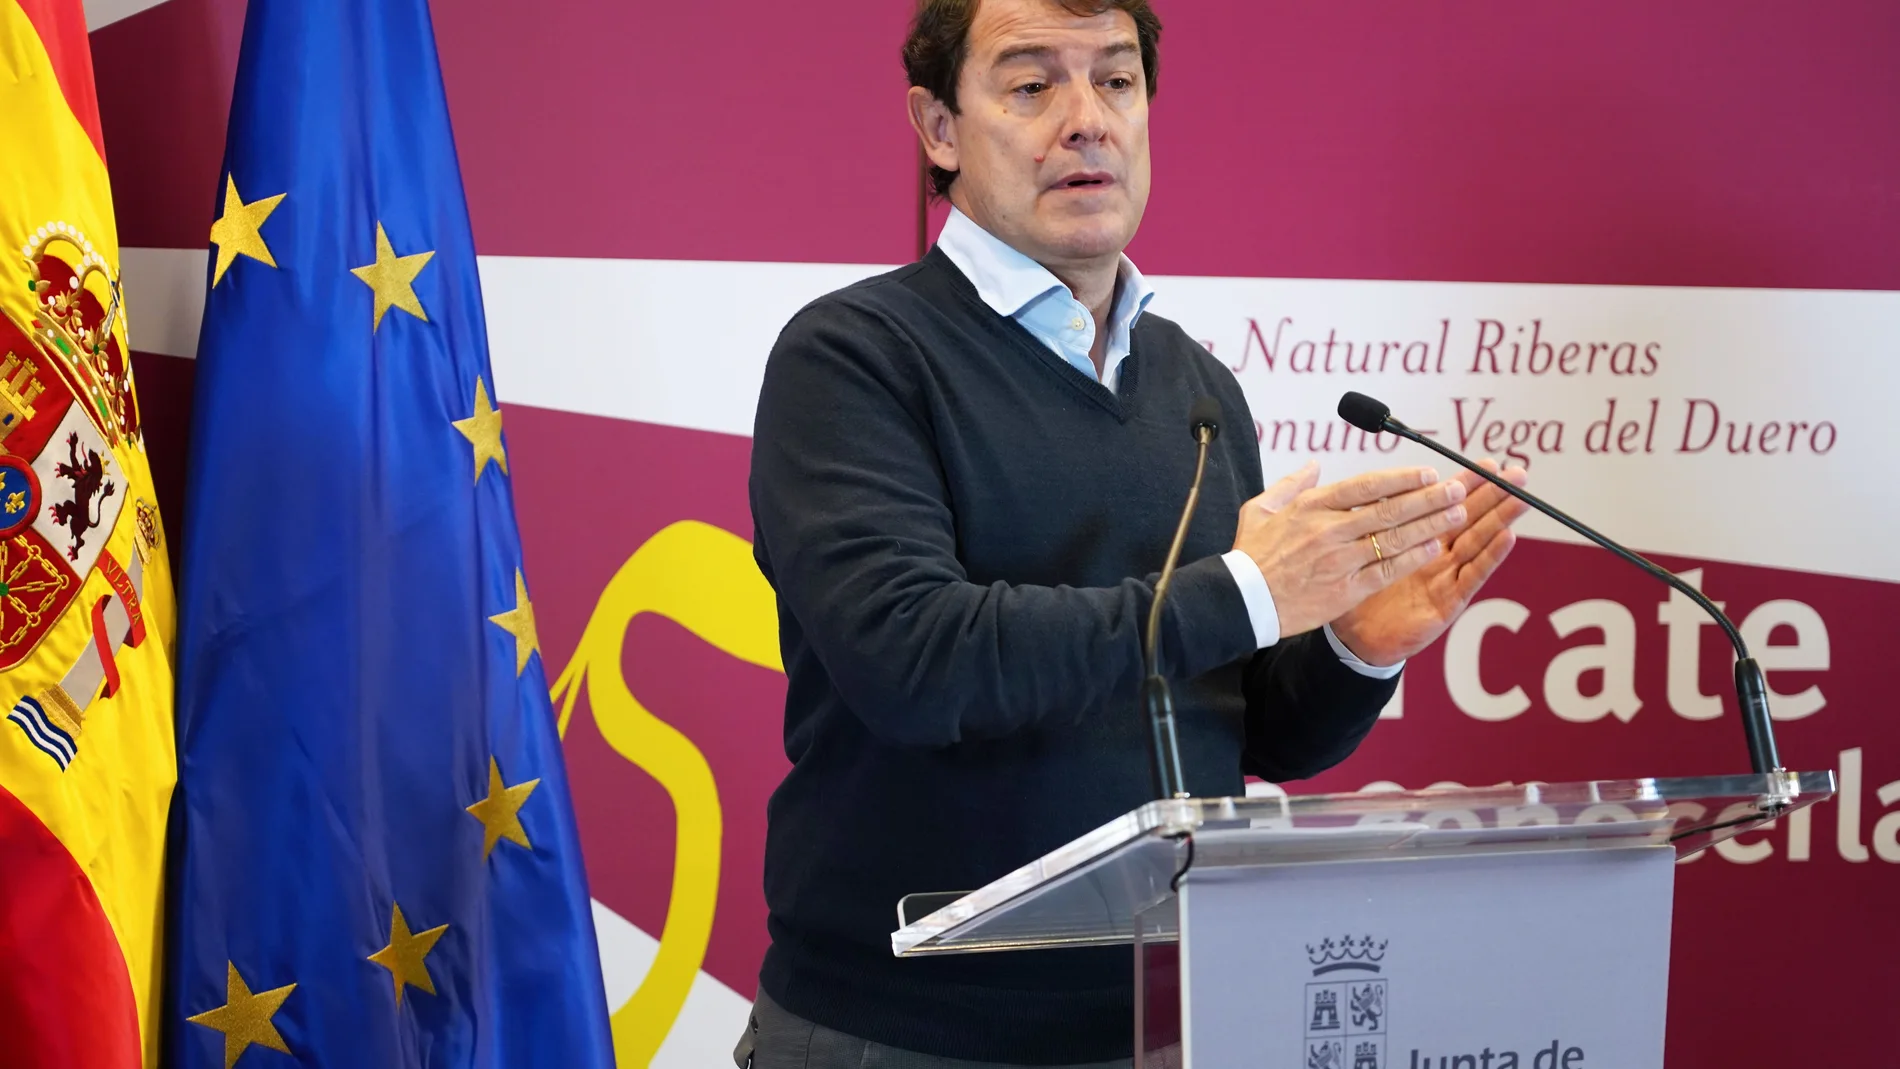 El presidente de la Junta de Castilla y León, Alfonso Fernández Mañueco, anuncia la rebaja de tasas, durante la visita al entorno de las riberas de Castronuño